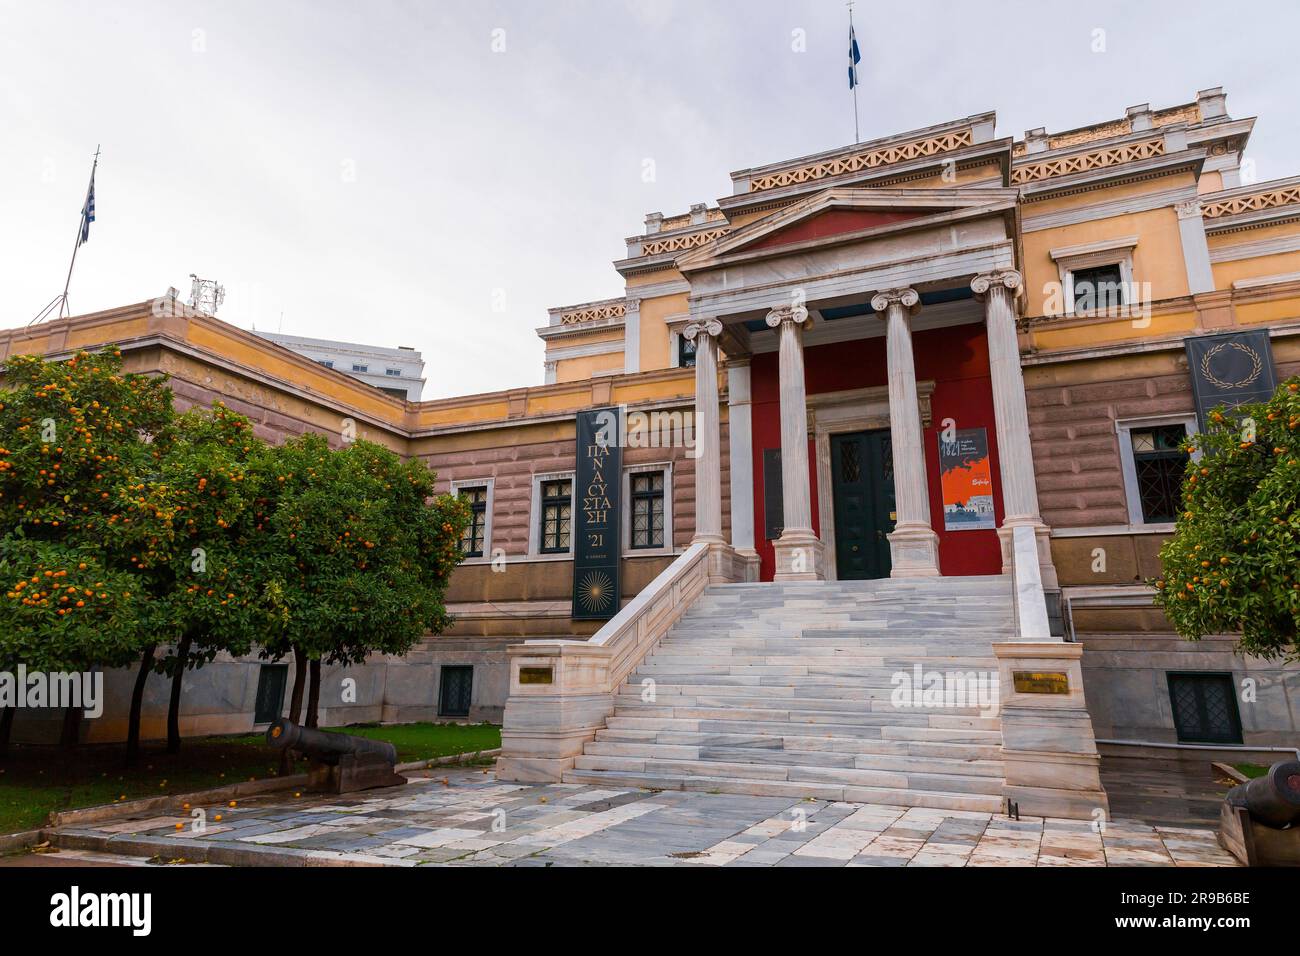 Athènes, Grèce - 27 novembre 2021 : vue extérieure du bâtiment de l'ancien Parlement, musée national d'histoire de la Grèce d'aujourd'hui, situé sur la place Kolokotronis, Banque D'Images